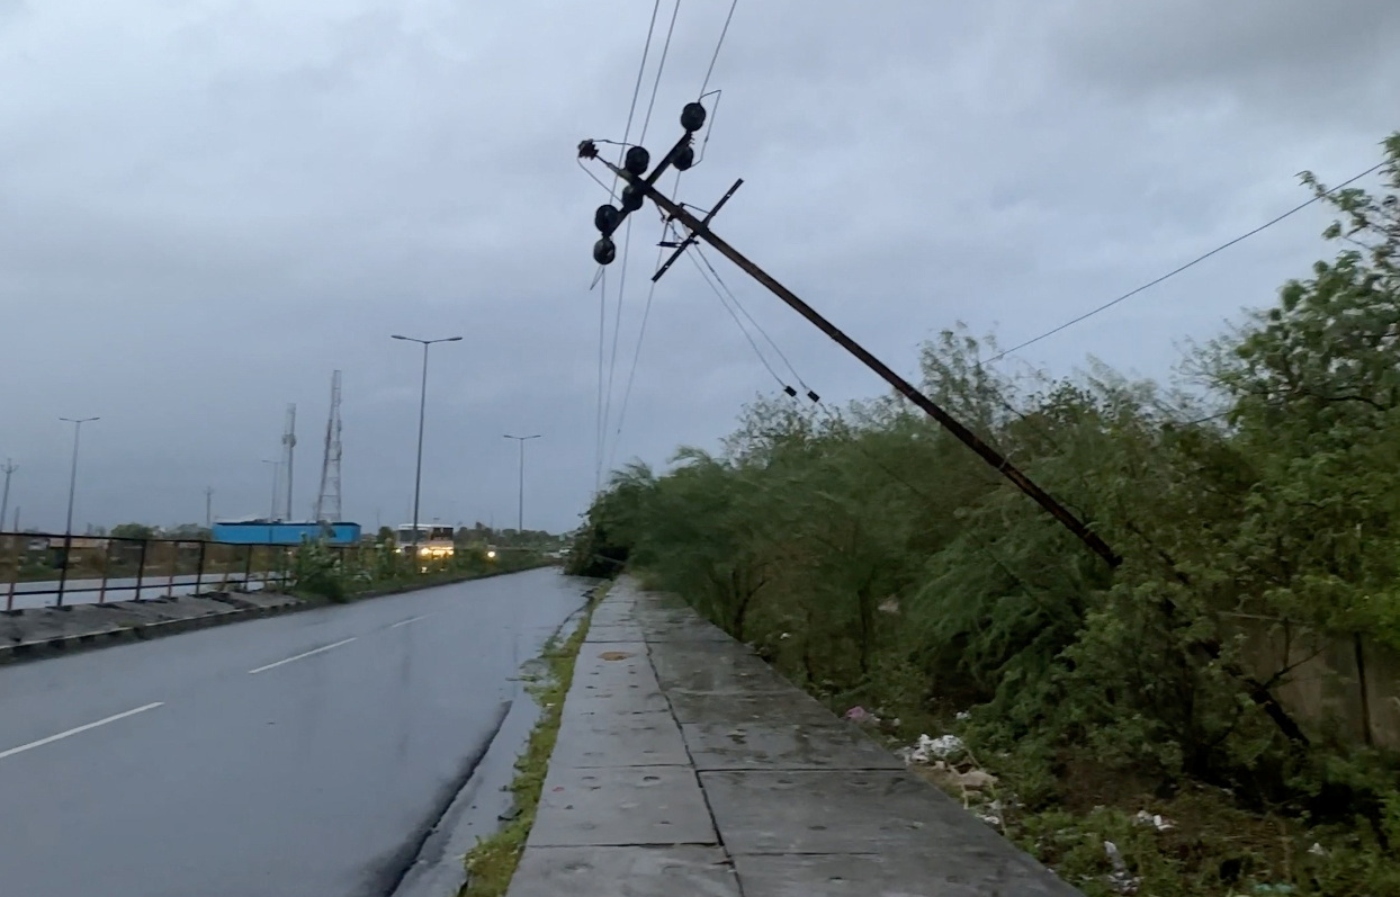 Ολλανδία: Μια γυναίκα νεκρή και τεράστιες καταστροφές από σπάνια θερινή κυκλωνική καταιγίδα – Απίστευτες εικόνες